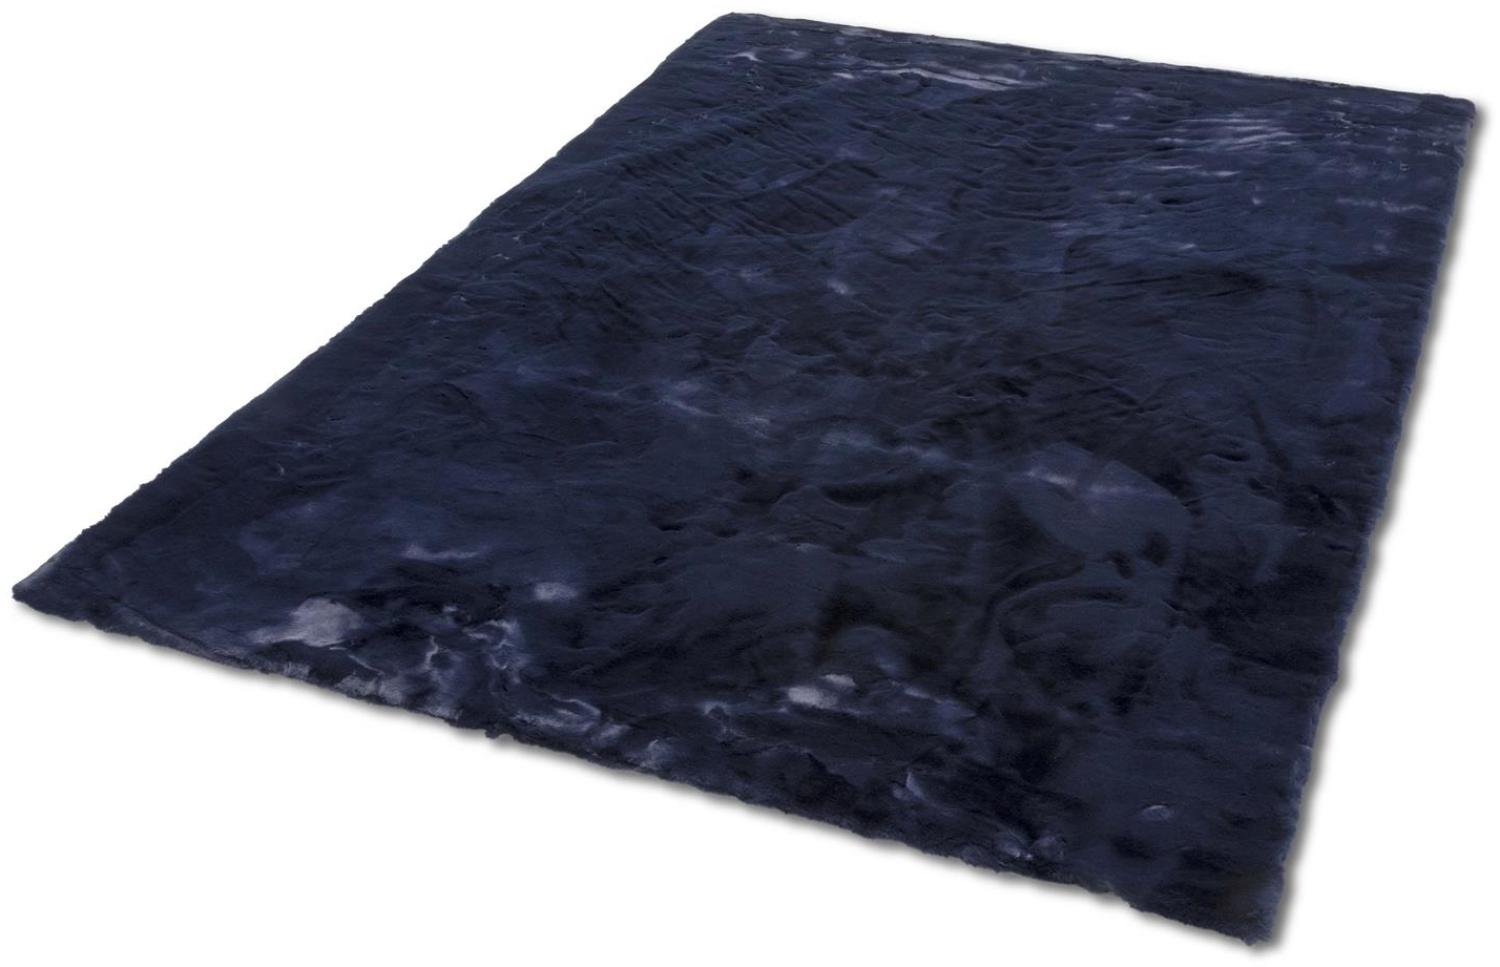 Teppich in Nachtblau aus 100% Polyester - 180x120x2,5cm (LxBxH) Bild 1